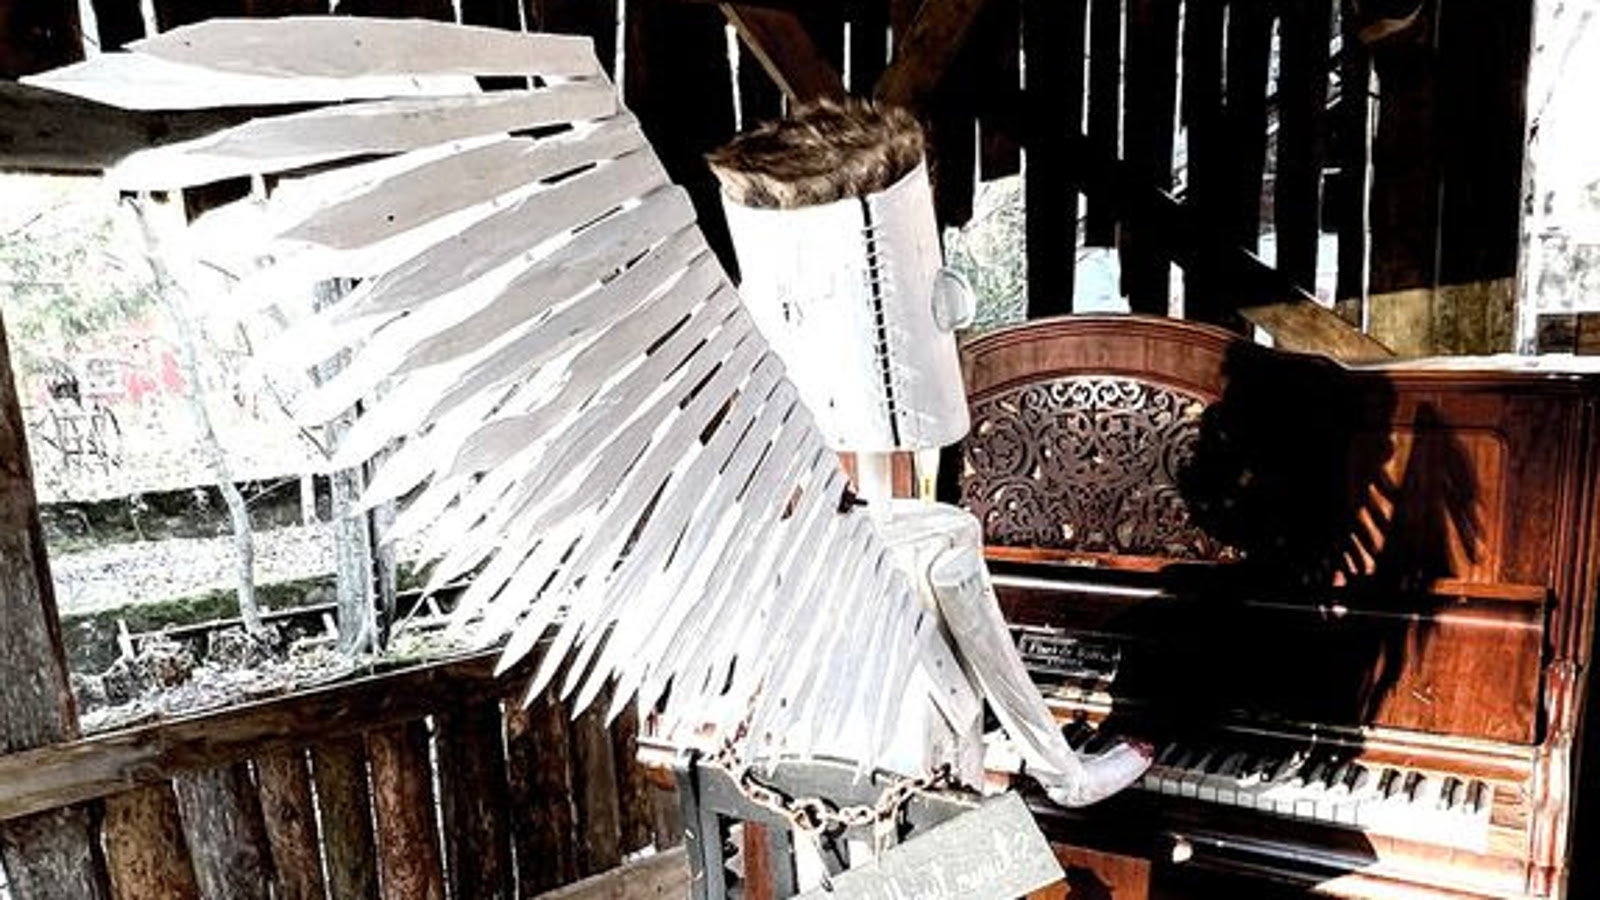 Kuvassa on tummassa raakapuusta rakennetussa tilassa vanhanaikaista pianoa soittamassa valkoisista siivistä tehty hahmo, jolla on torven muotoiset valkoiset käsivarret ja kädet soittamassa sekä valkoinen tötteröpää.